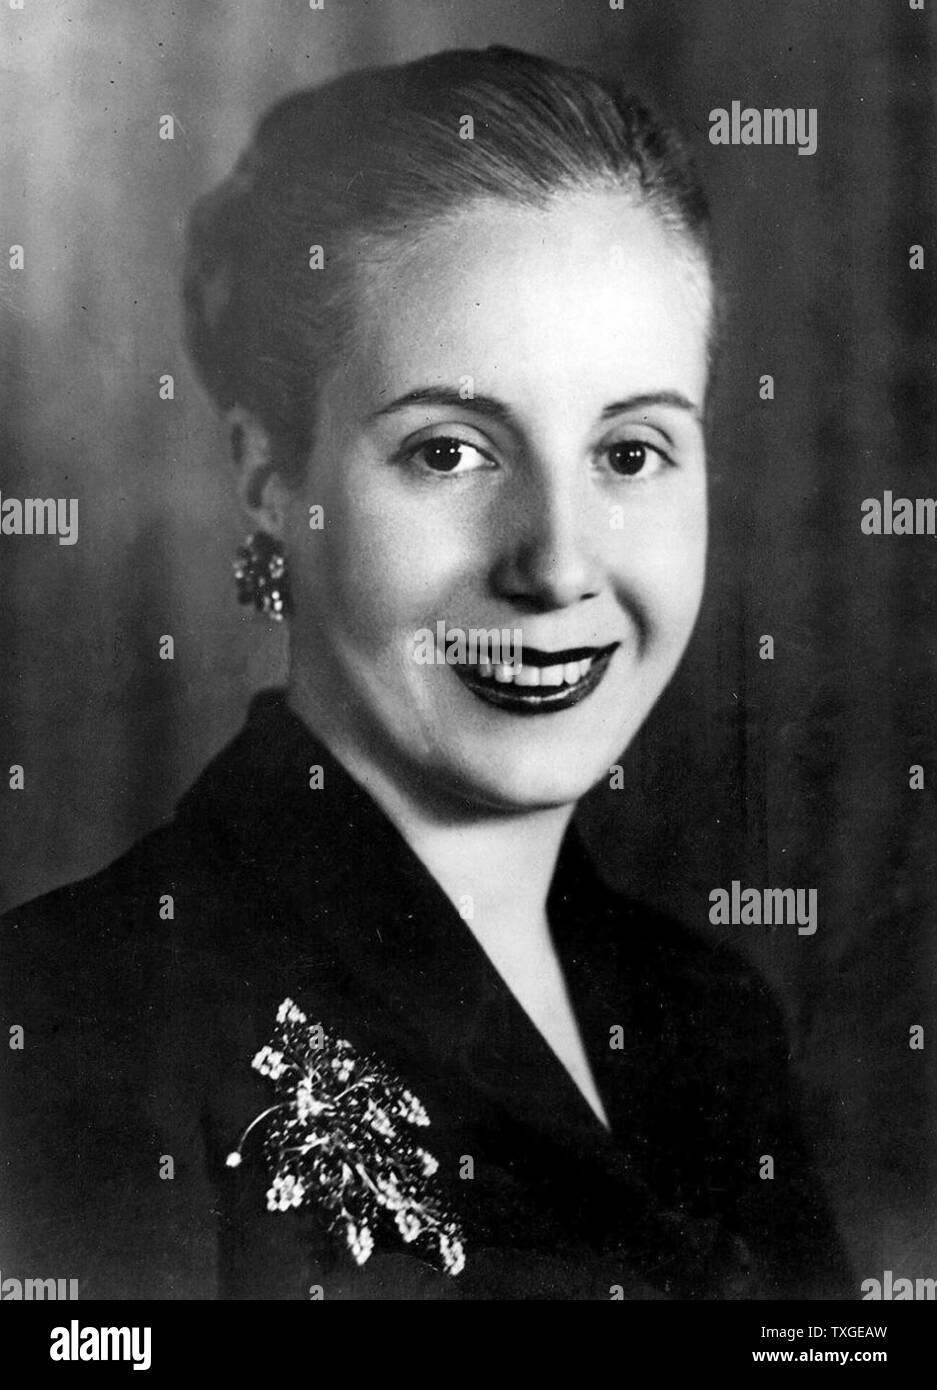 Portrait photographique de Eva Peron (1919-1952) deuxième épouse du Président Argentin Juan Peron (1895-1974) et a été la première dame de l'Argentine. Datée 1945 Banque D'Images